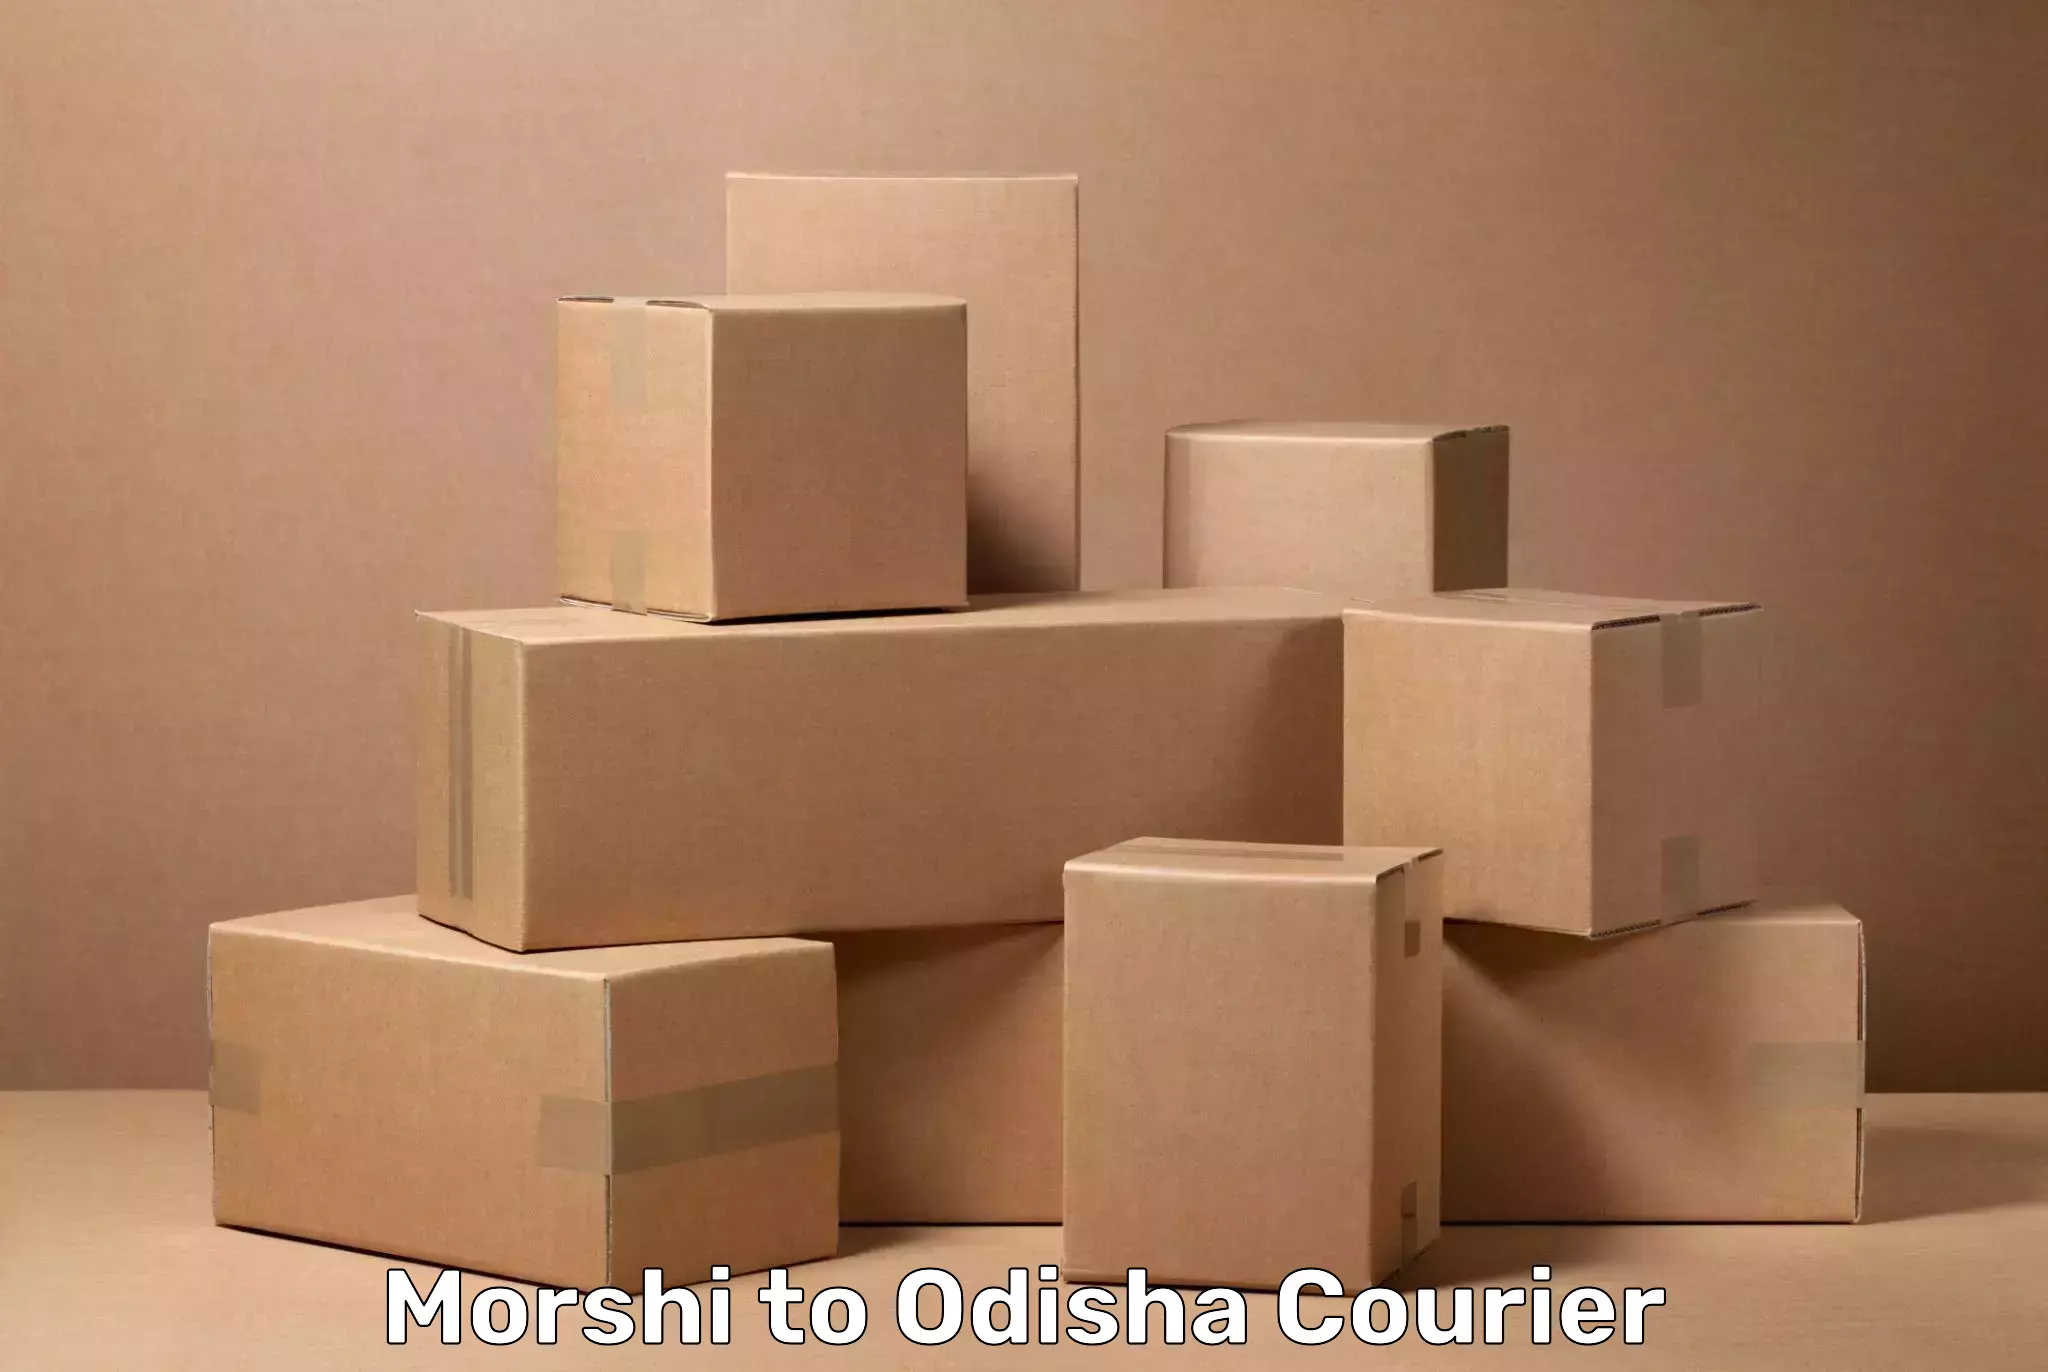 Luggage delivery app Morshi to Kuchinda